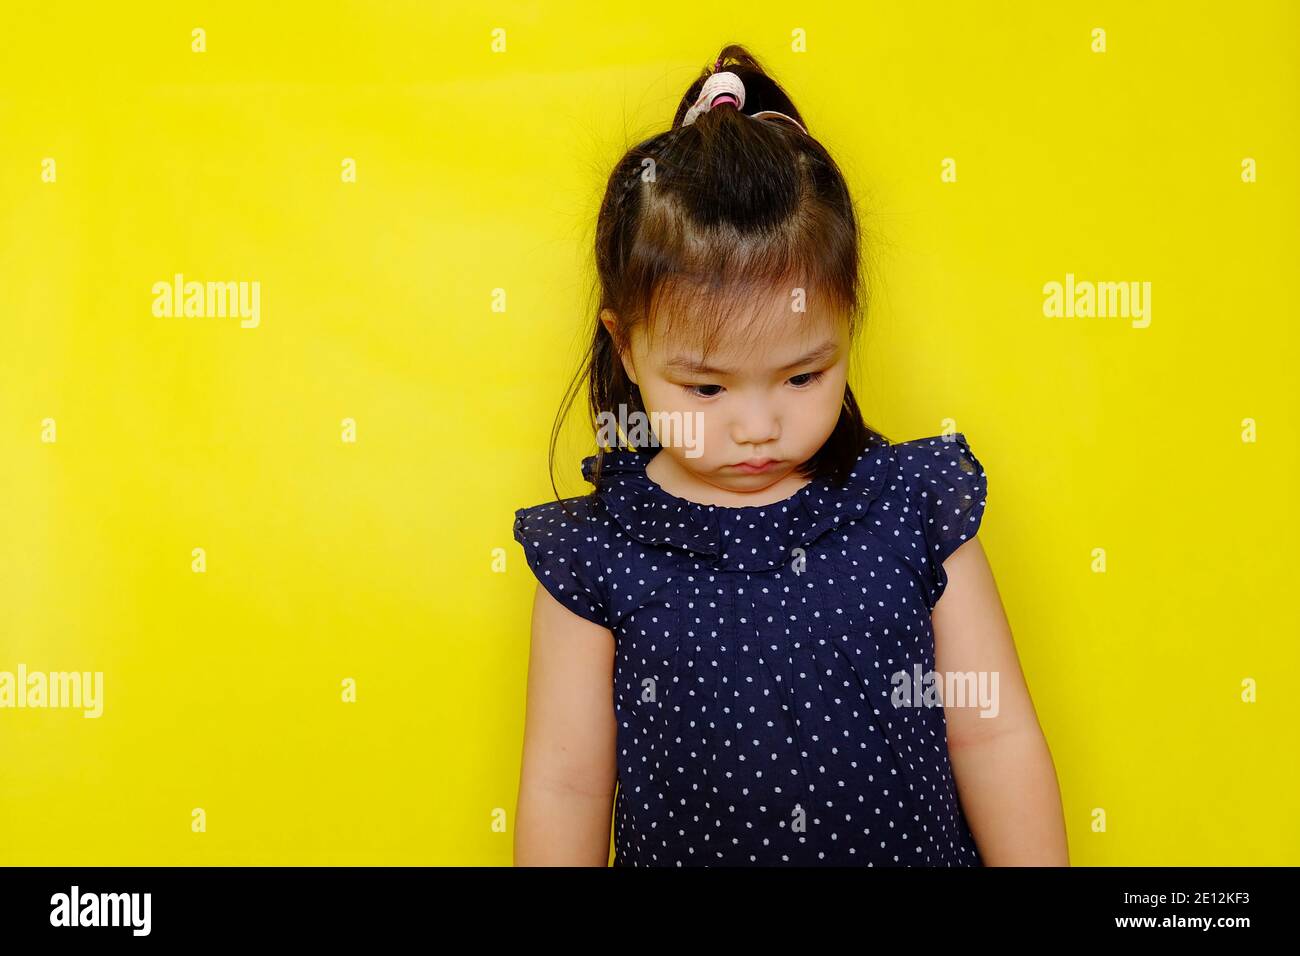 Une jolie jeune fille asiatique debout seule se sentant bouleversée, frustrée, et déçue, regardant vers le bas, pensant. Arrière-plan jaune vif. Banque D'Images